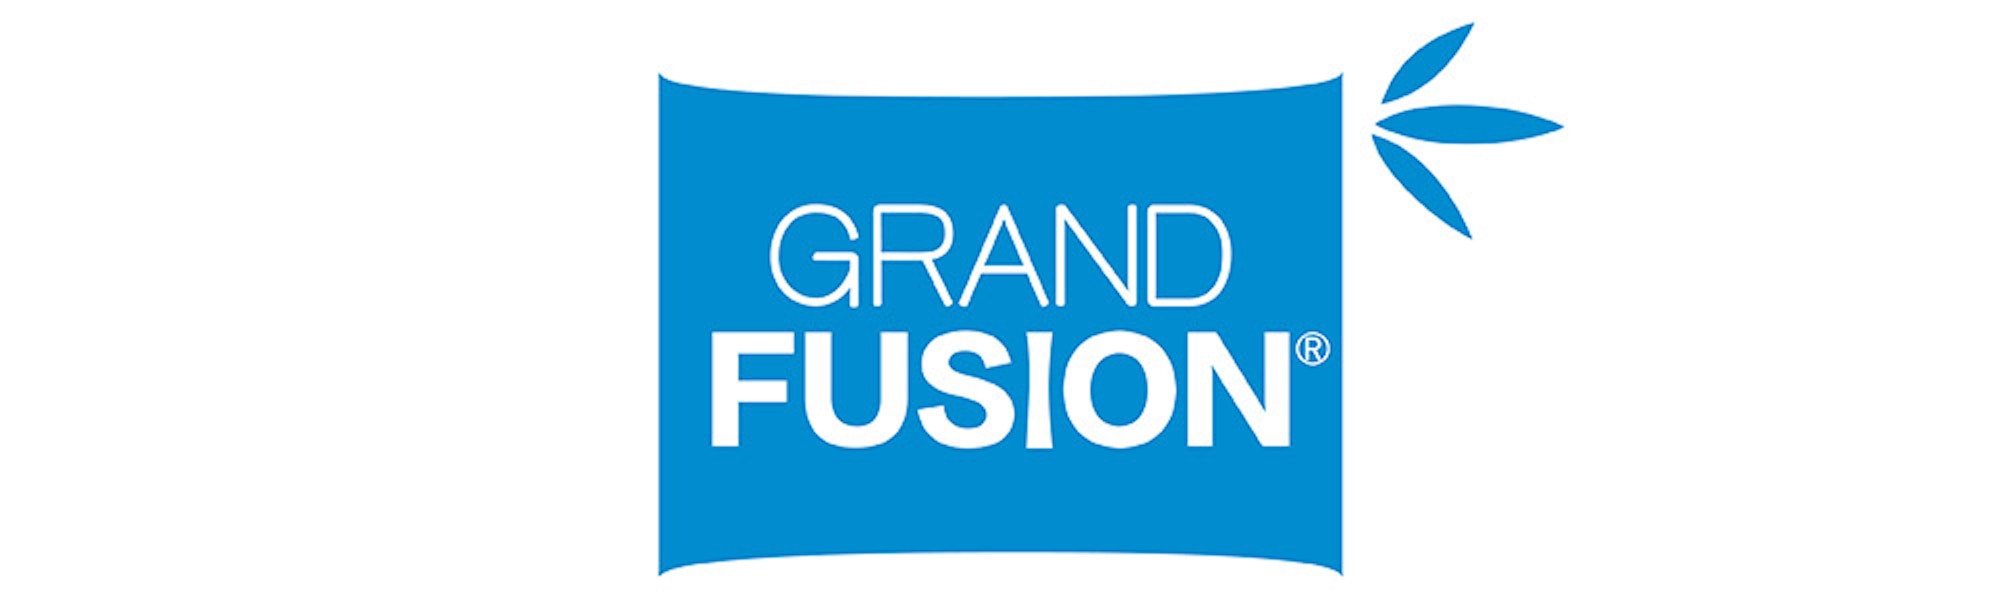 Grand Fusion